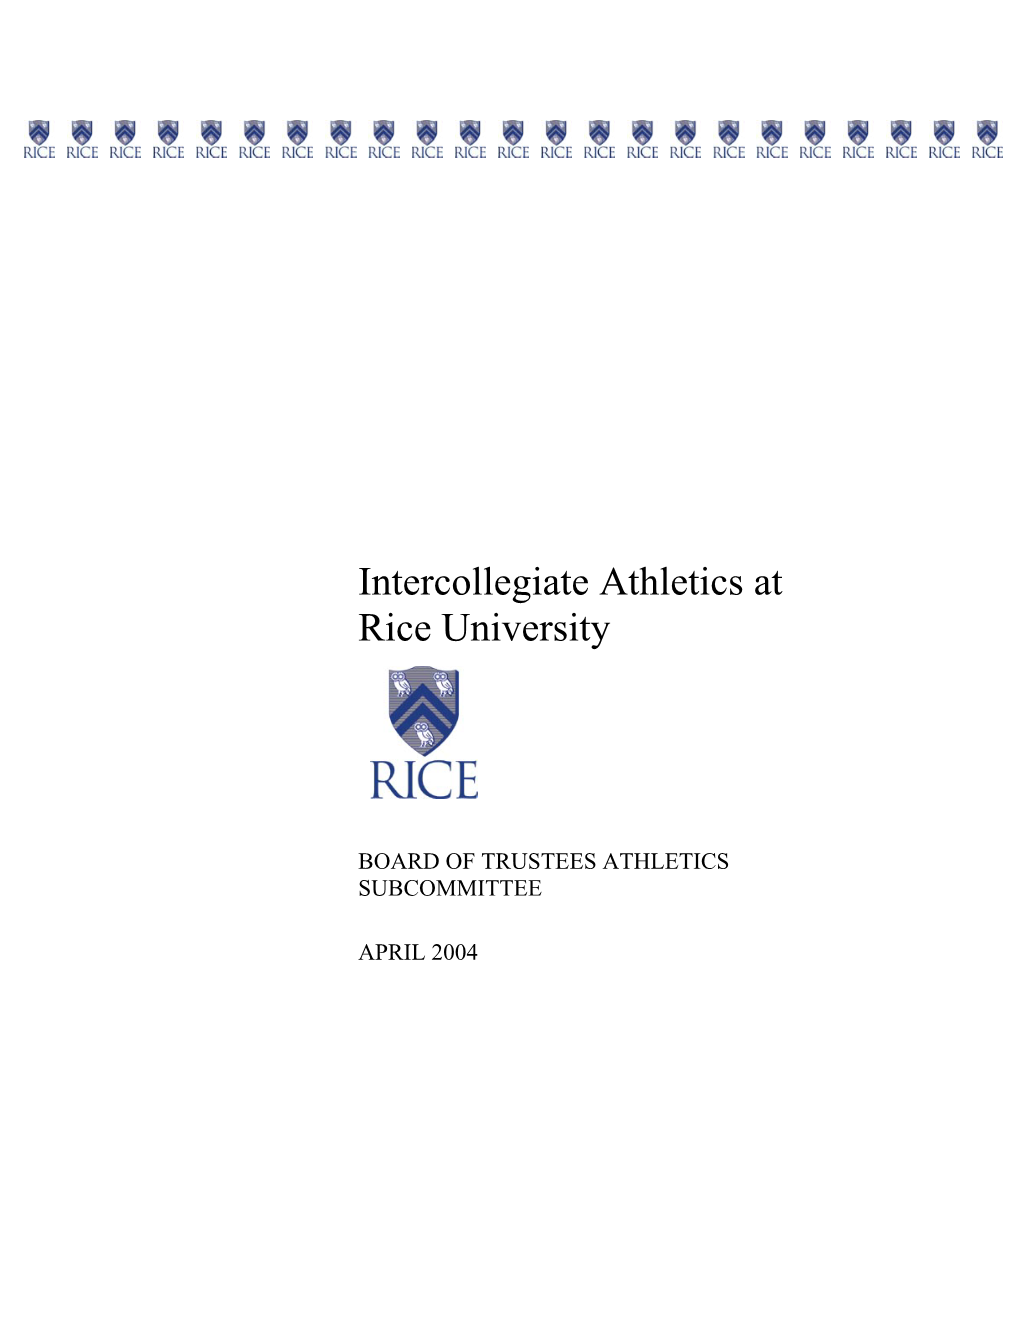 Intercollegiate Athletics at Rice University